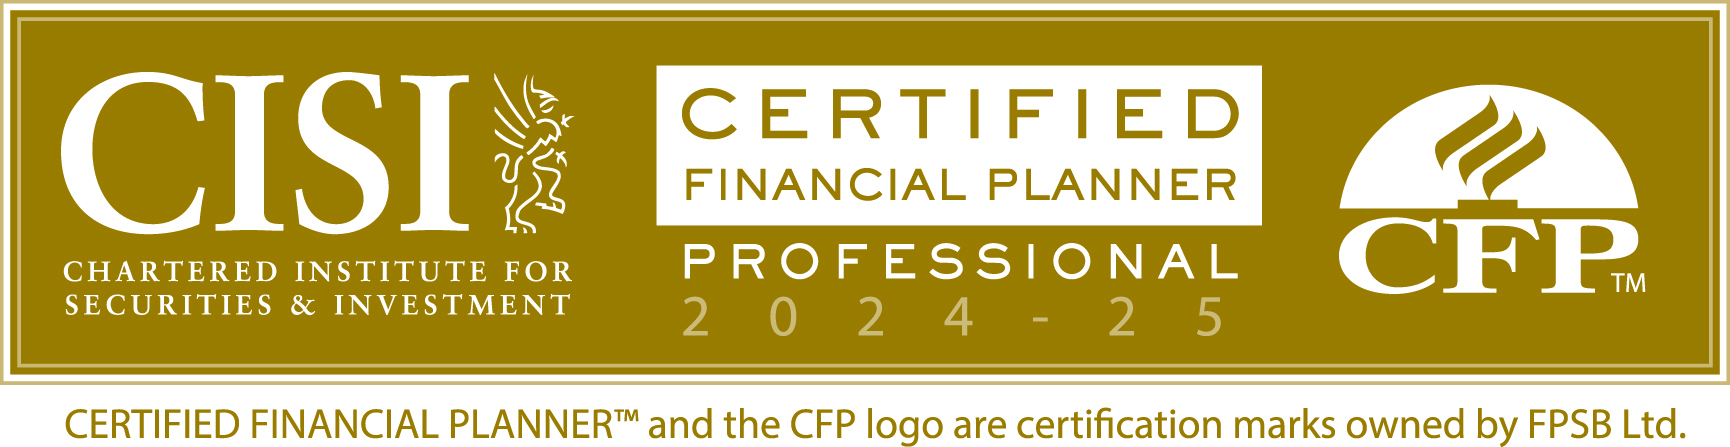 Certified Financial Planner CFP